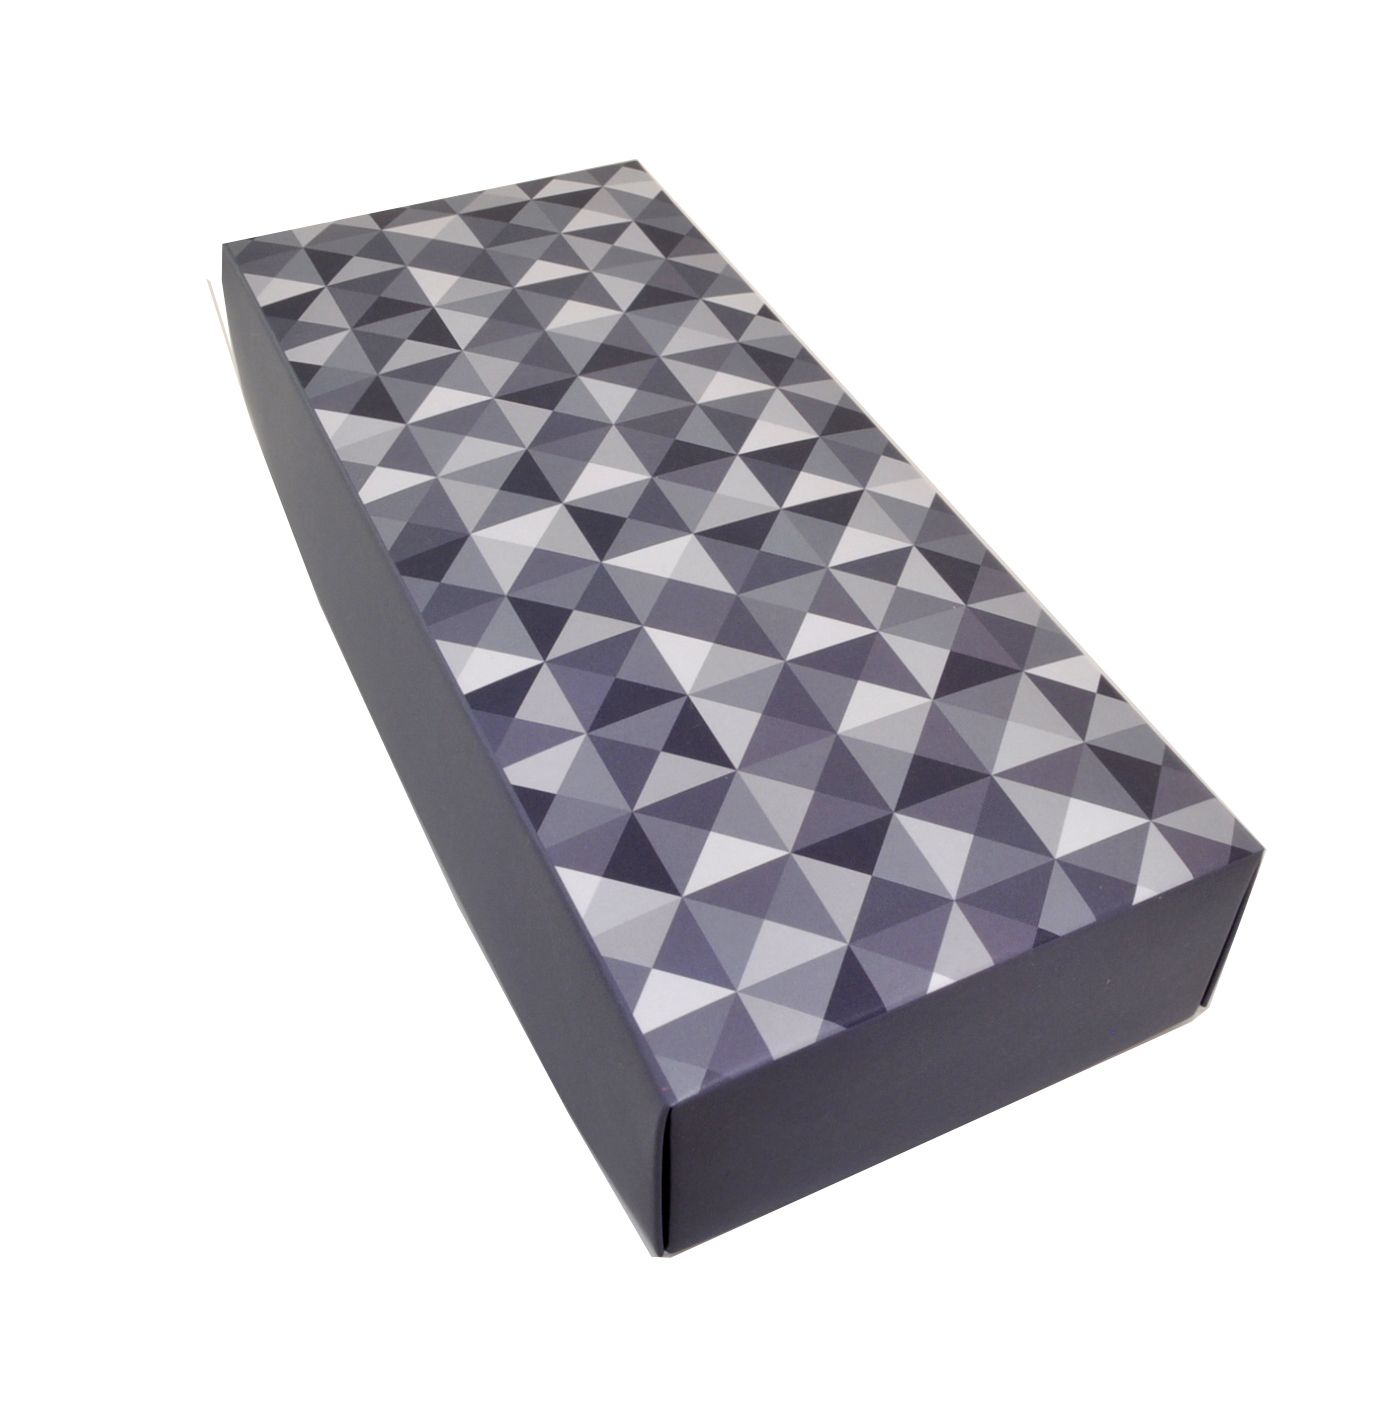 UP50 Коробка для носков серая-синяя с мозайкой описание: Состав - Картон, Цвет - Серо-синий, Размеры - ШхВхТ: 9,5 см х 22,5 см х 4,5 см, Вес - , Стоимость - 250 руб руб.;